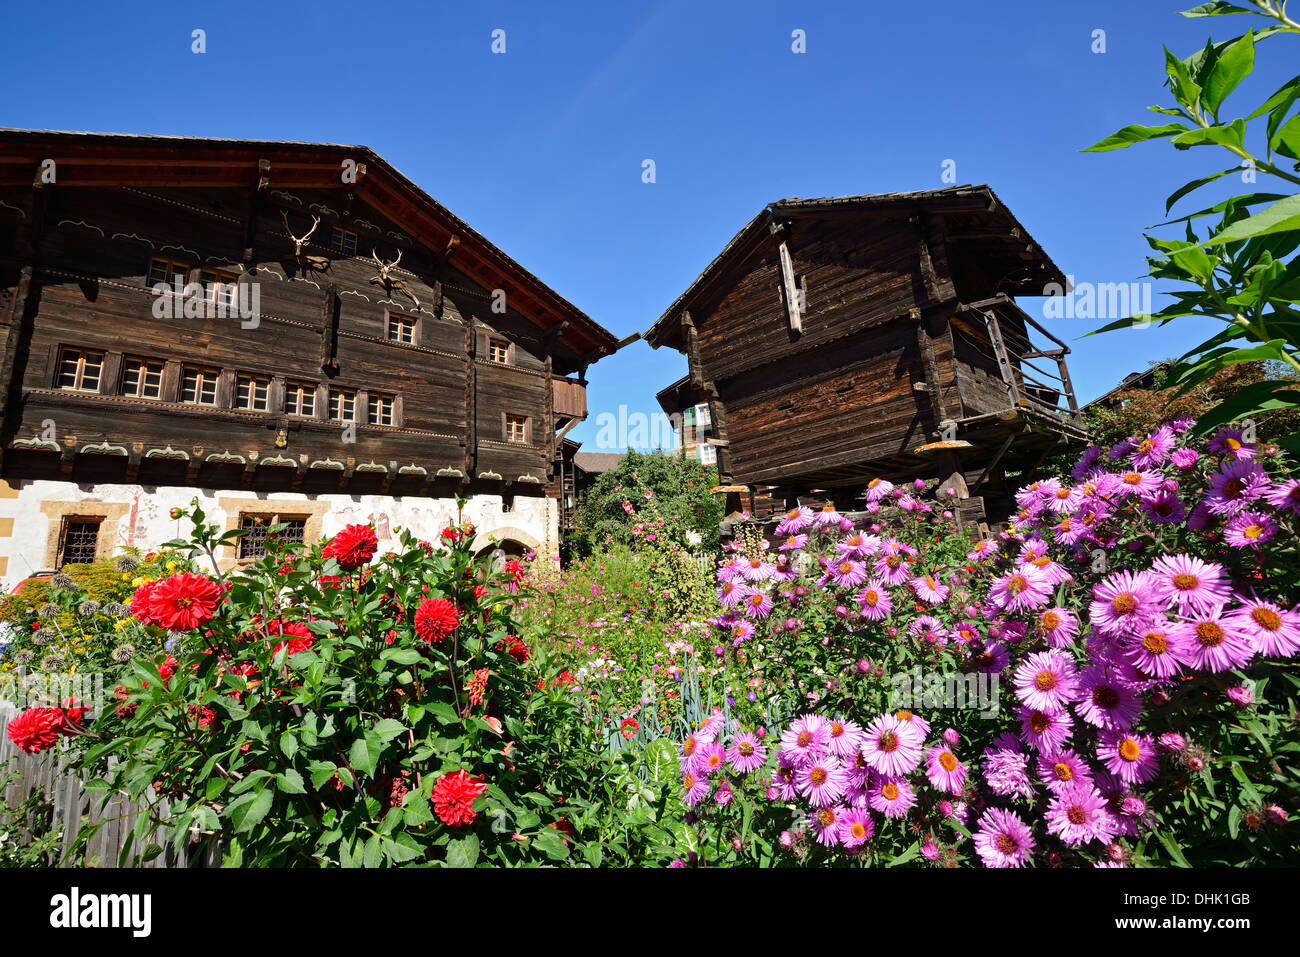 Jardin et maison traditionnelle en bois, Valais, Suisse Banque D'Images